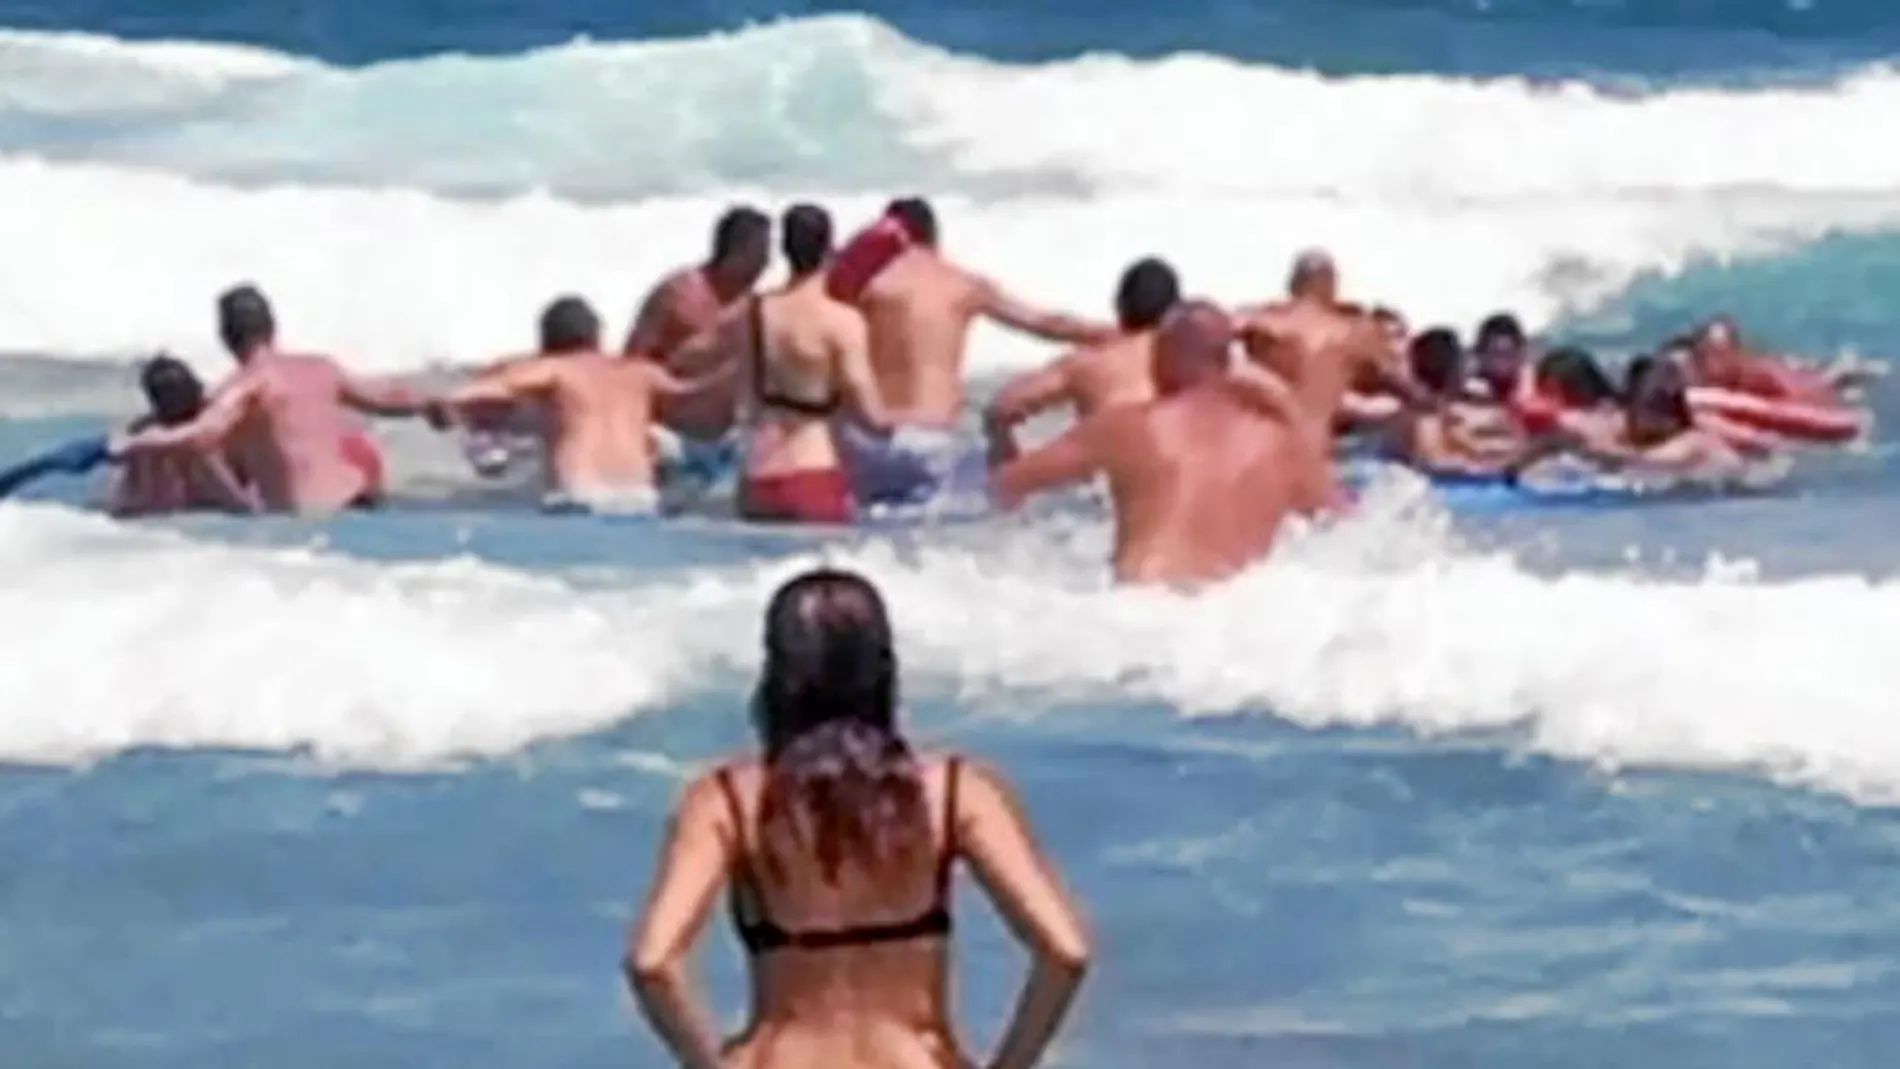 Varios ciudadanos hicieron una cadena humana en la playa de las Amoladeras, en La Manga, para prestar ayuda a cuatro bañistas